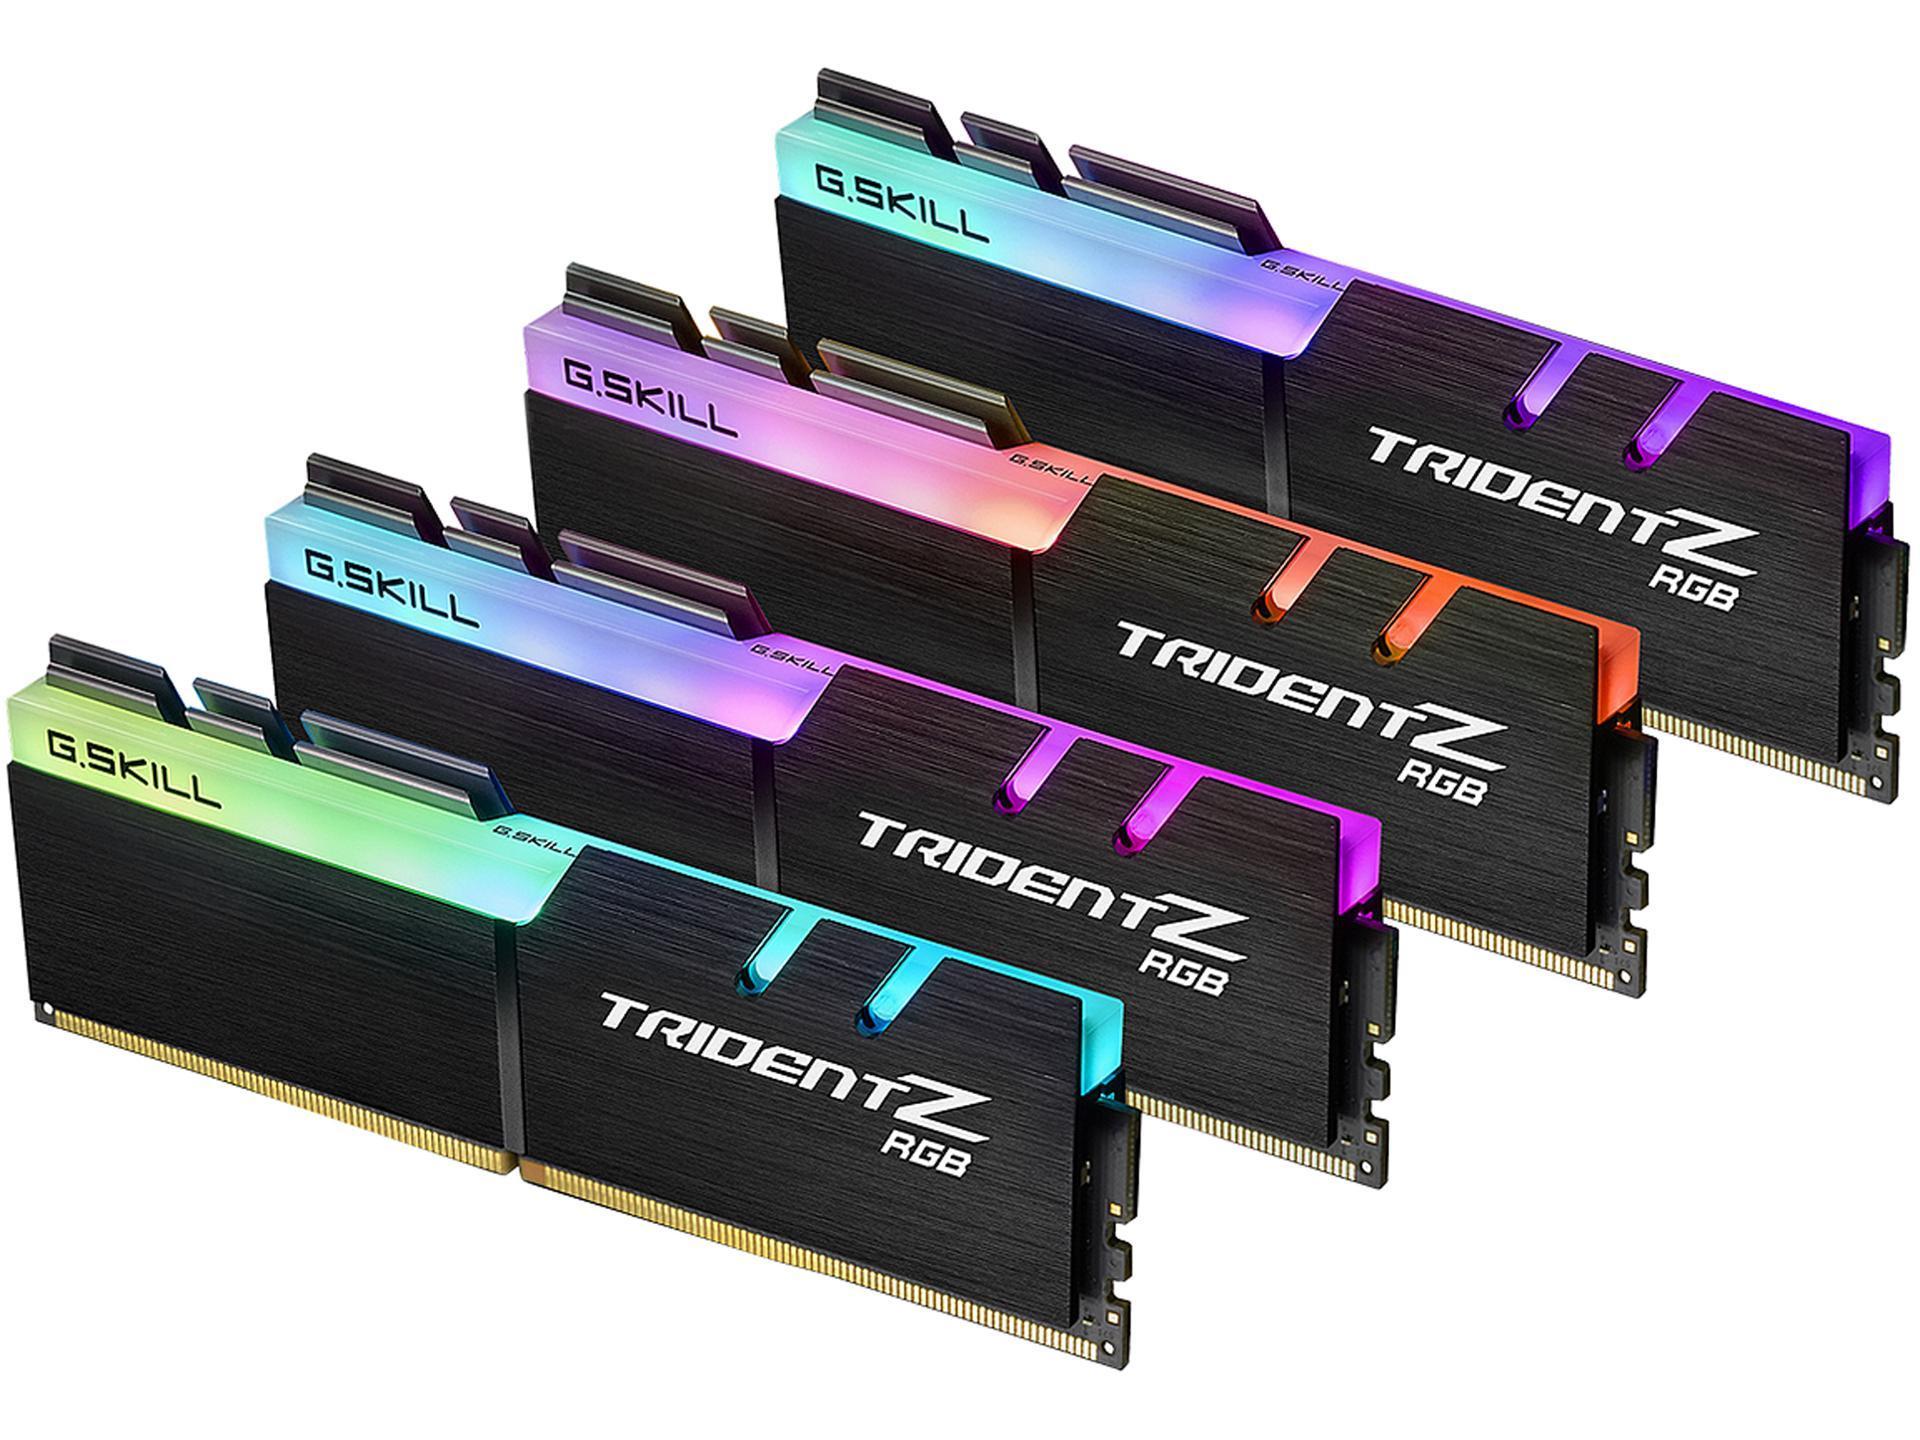 RAM G.Skill Trident Z RGB 64GB (4x16) DDR4-3000 CL16 (F4-3000C16Q-64GTZR) slide image 0